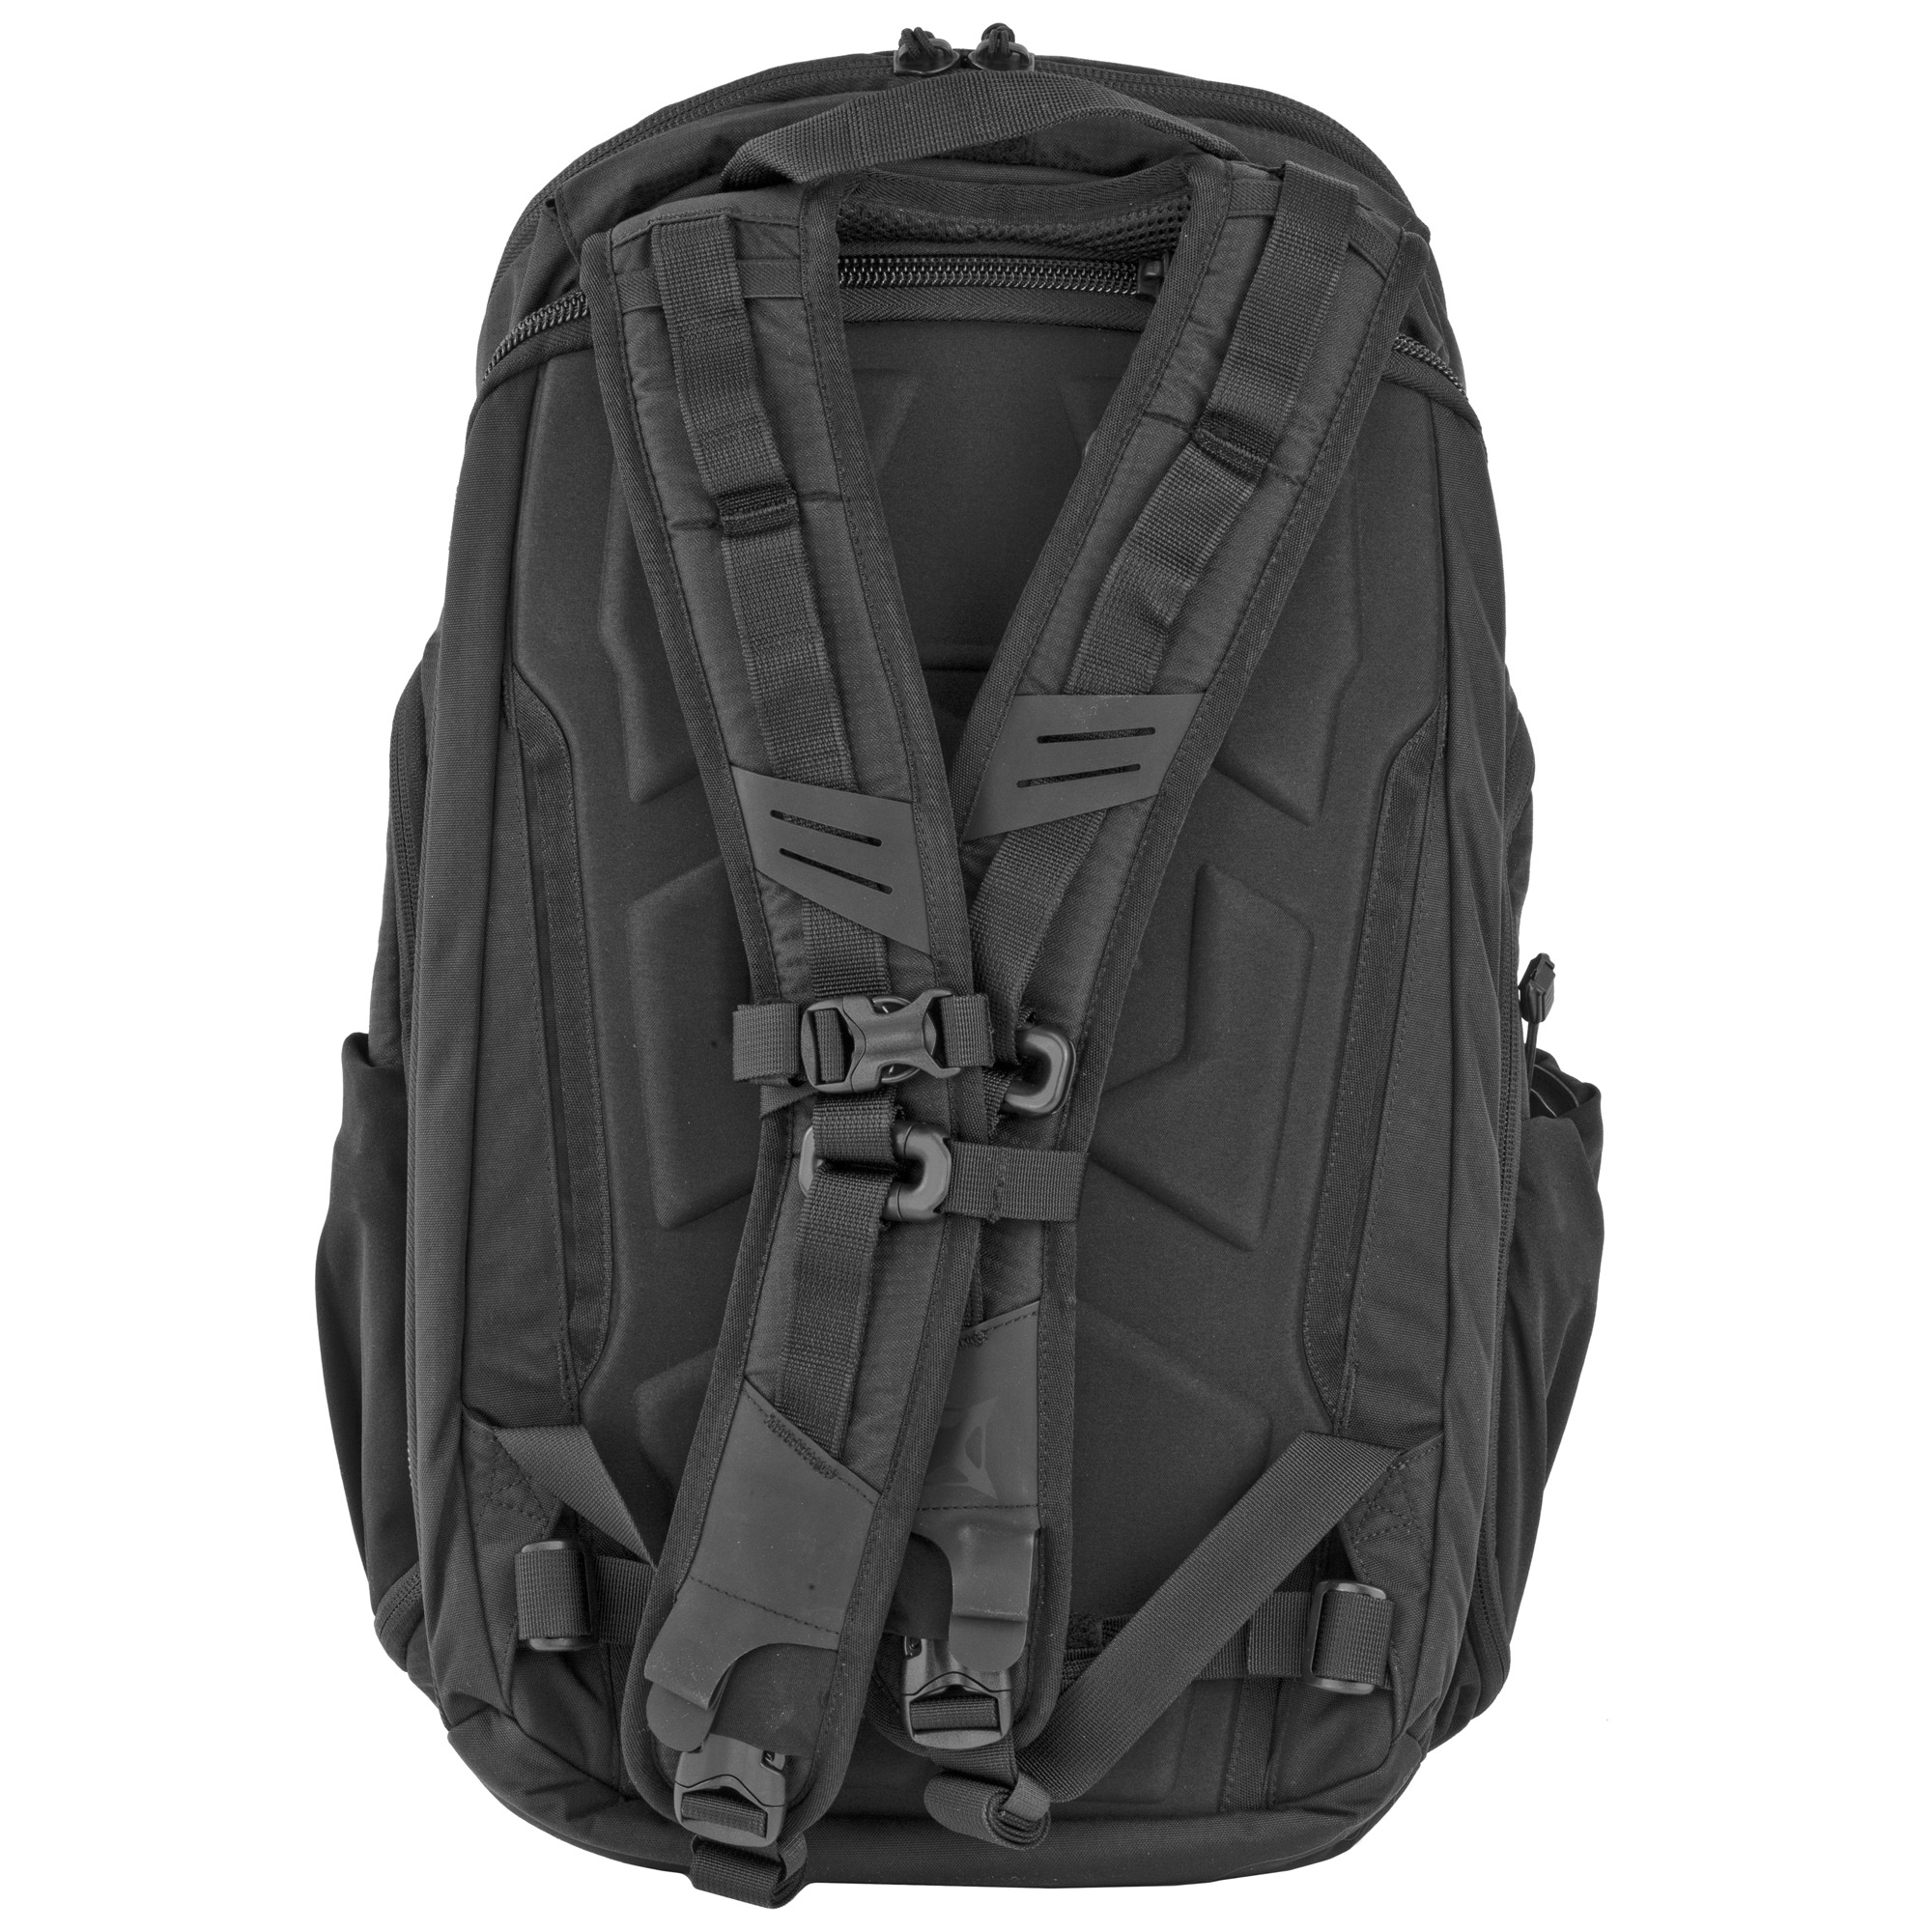 Vertx EDC Gamut 2.0 Backpack Adjustable Shoulder and Sternum Straps ...